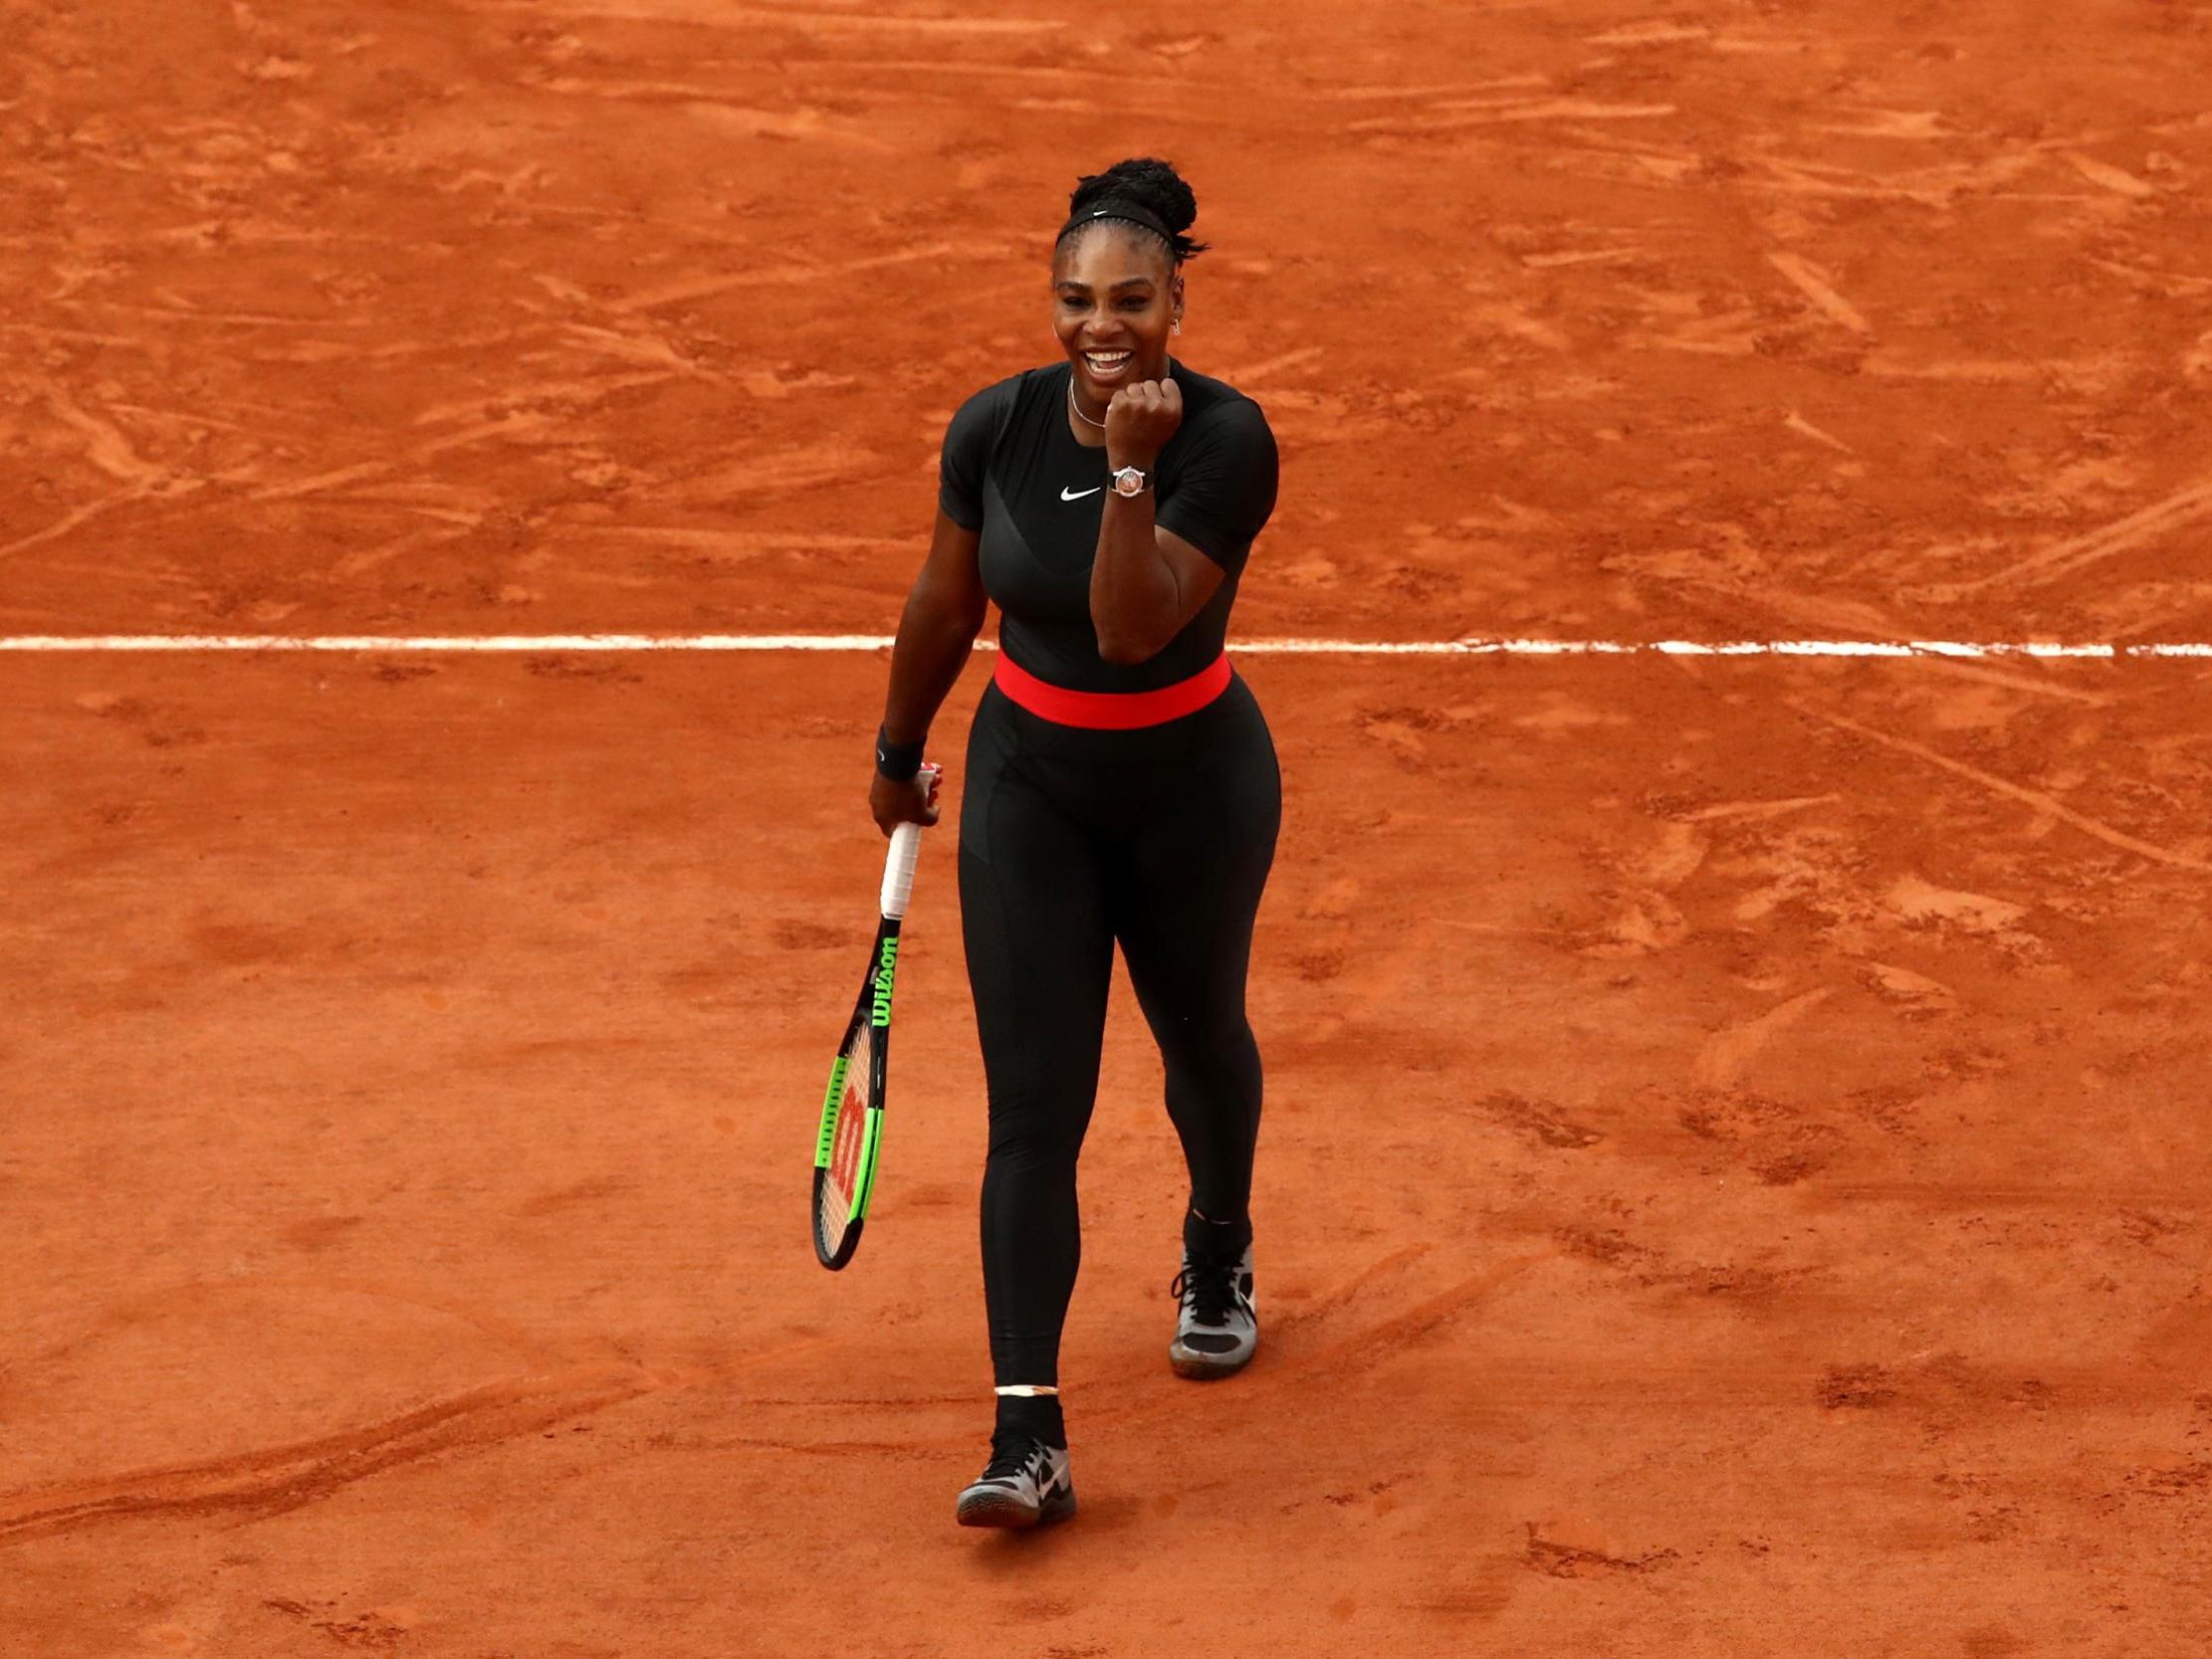 The Serena in Black